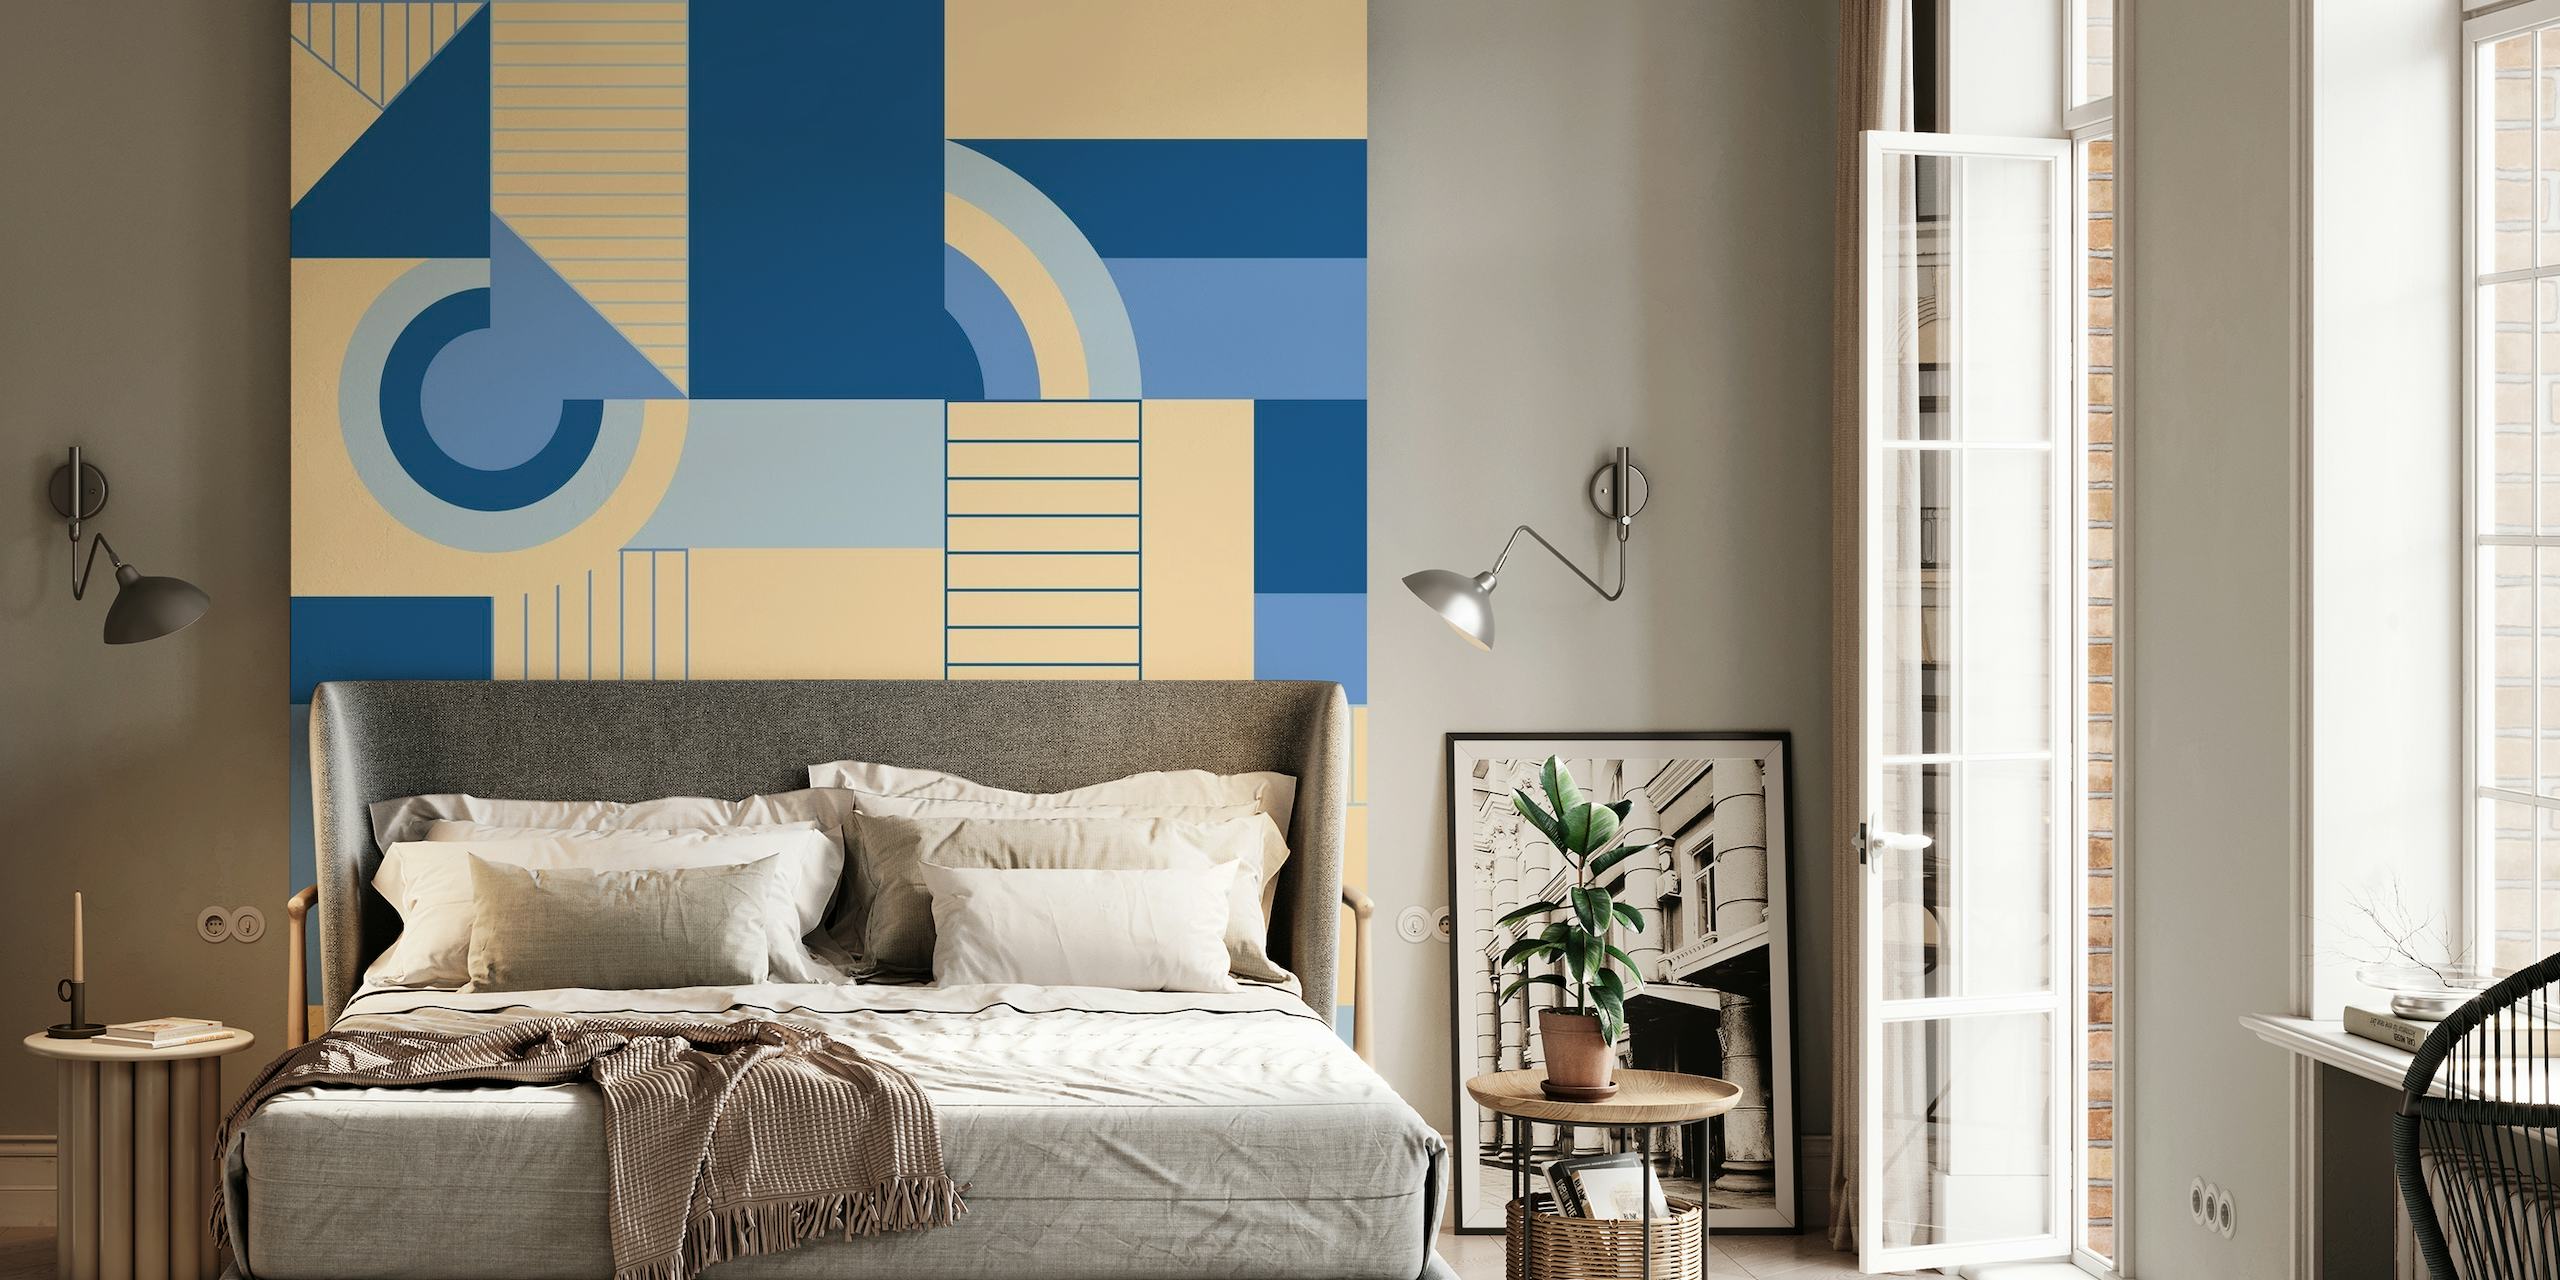 Apstraktni geometrijski zidni mural u umirujućim nijansama plave i neutralnim tonovima, nazvan 'Calming Blocks'